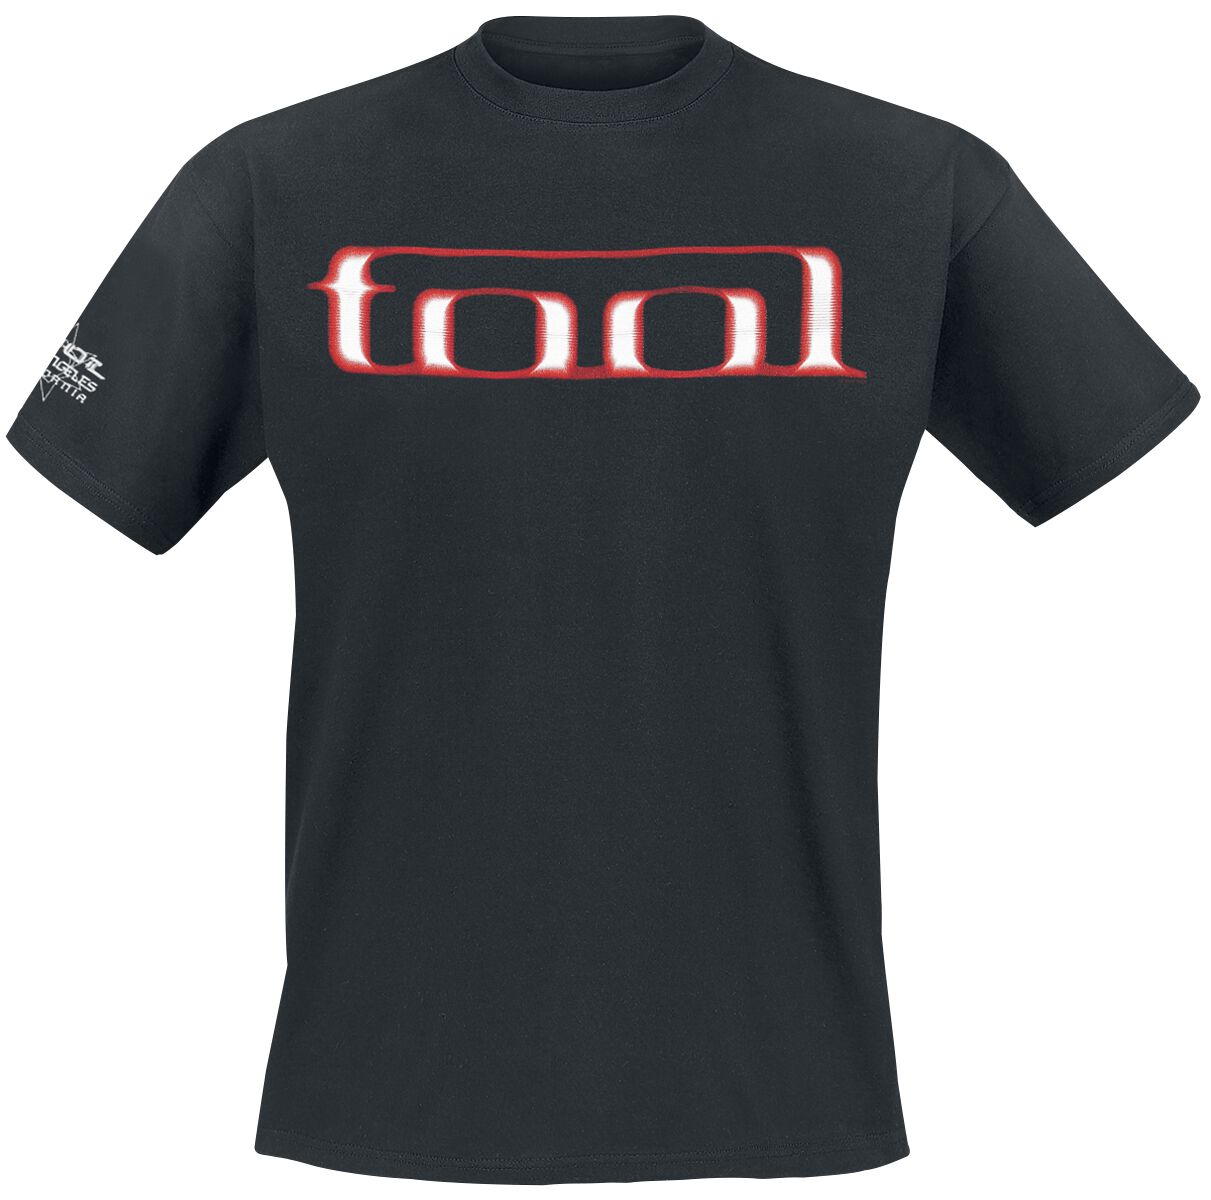 Tool T-Shirt - Grid Skull - S bis XXL - für Männer - Größe XL - schwarz  - Lizenziertes Merchandise!